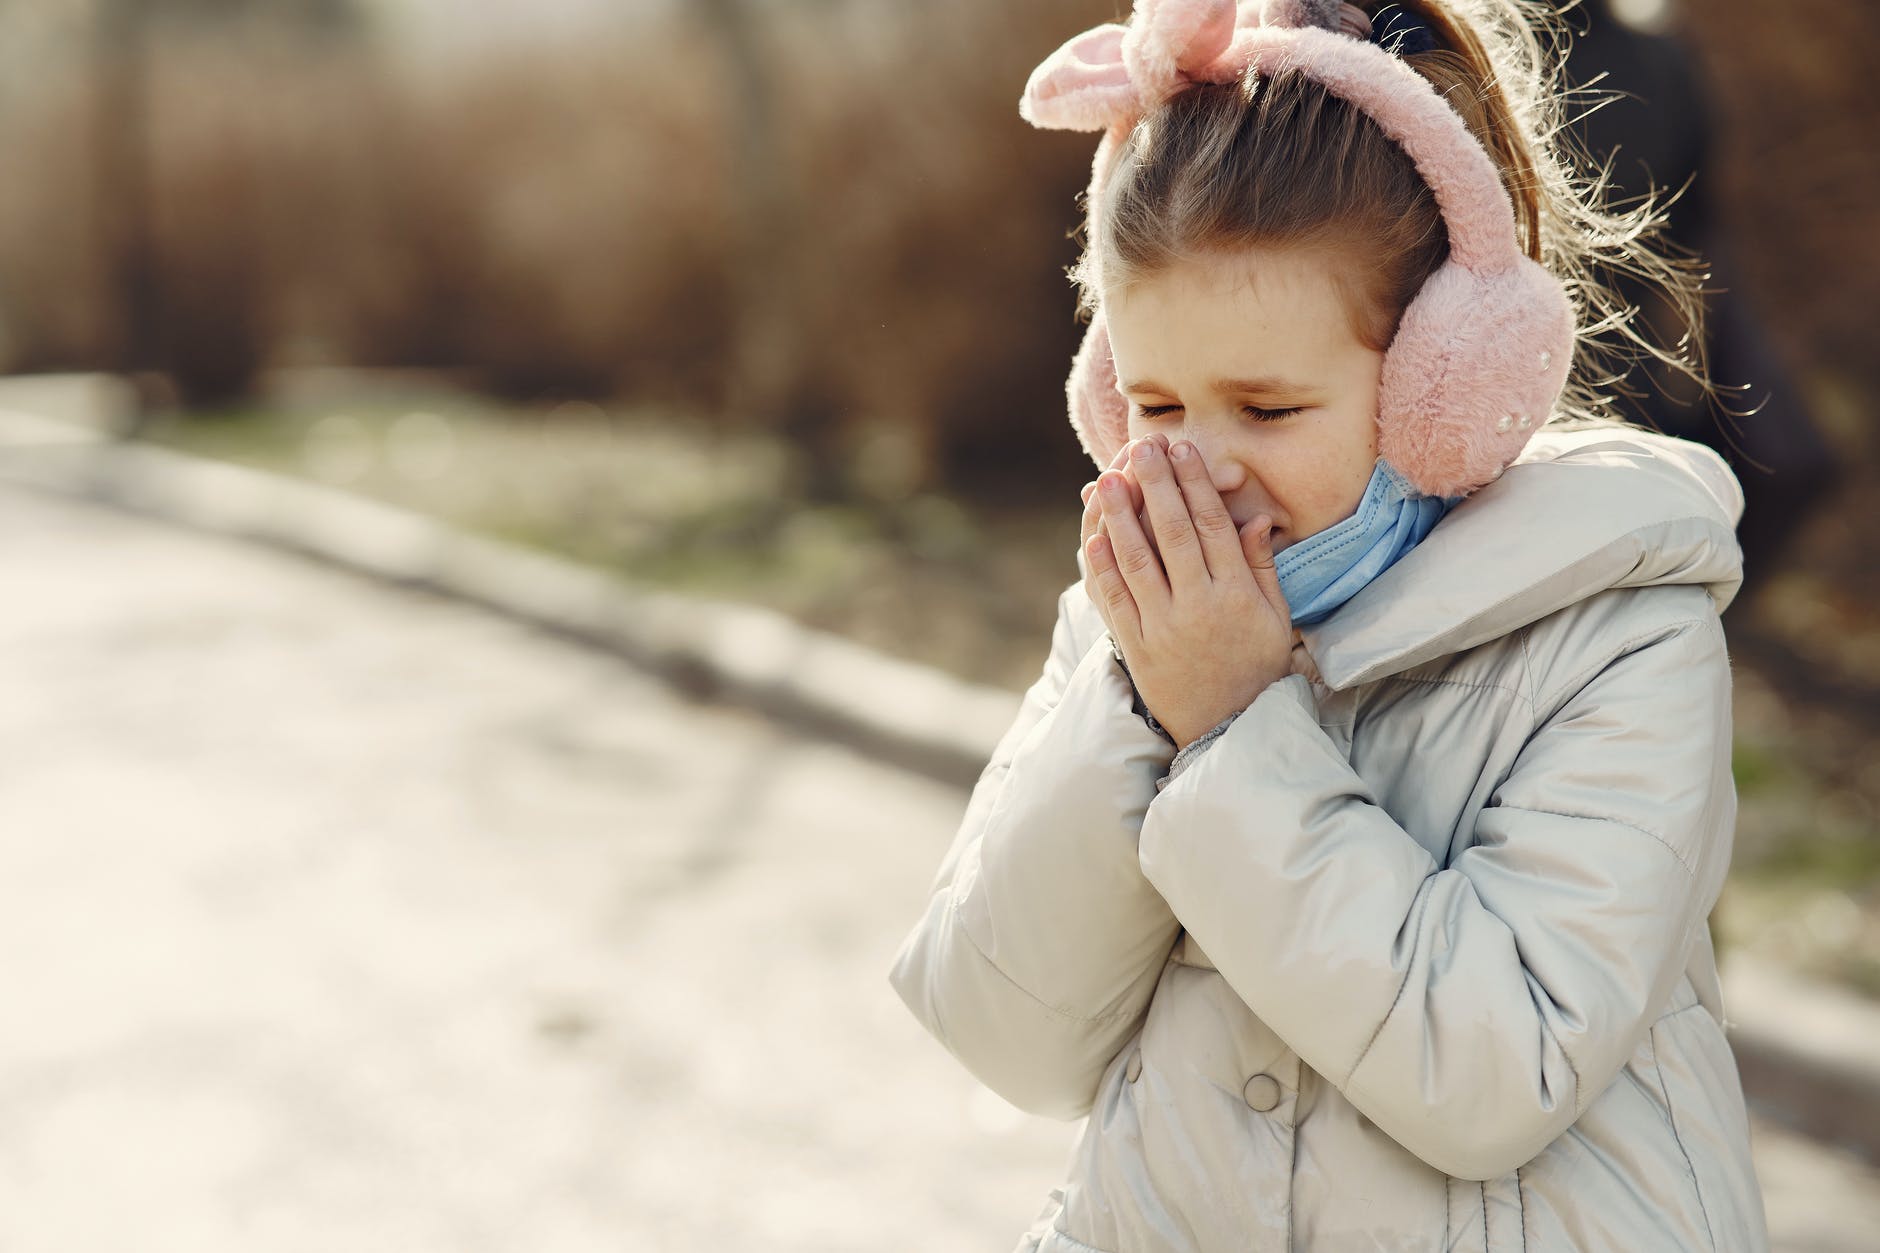 Doença mão-pé-boca: Conheça os sintomas e tratamentos da doença frequente em crianças